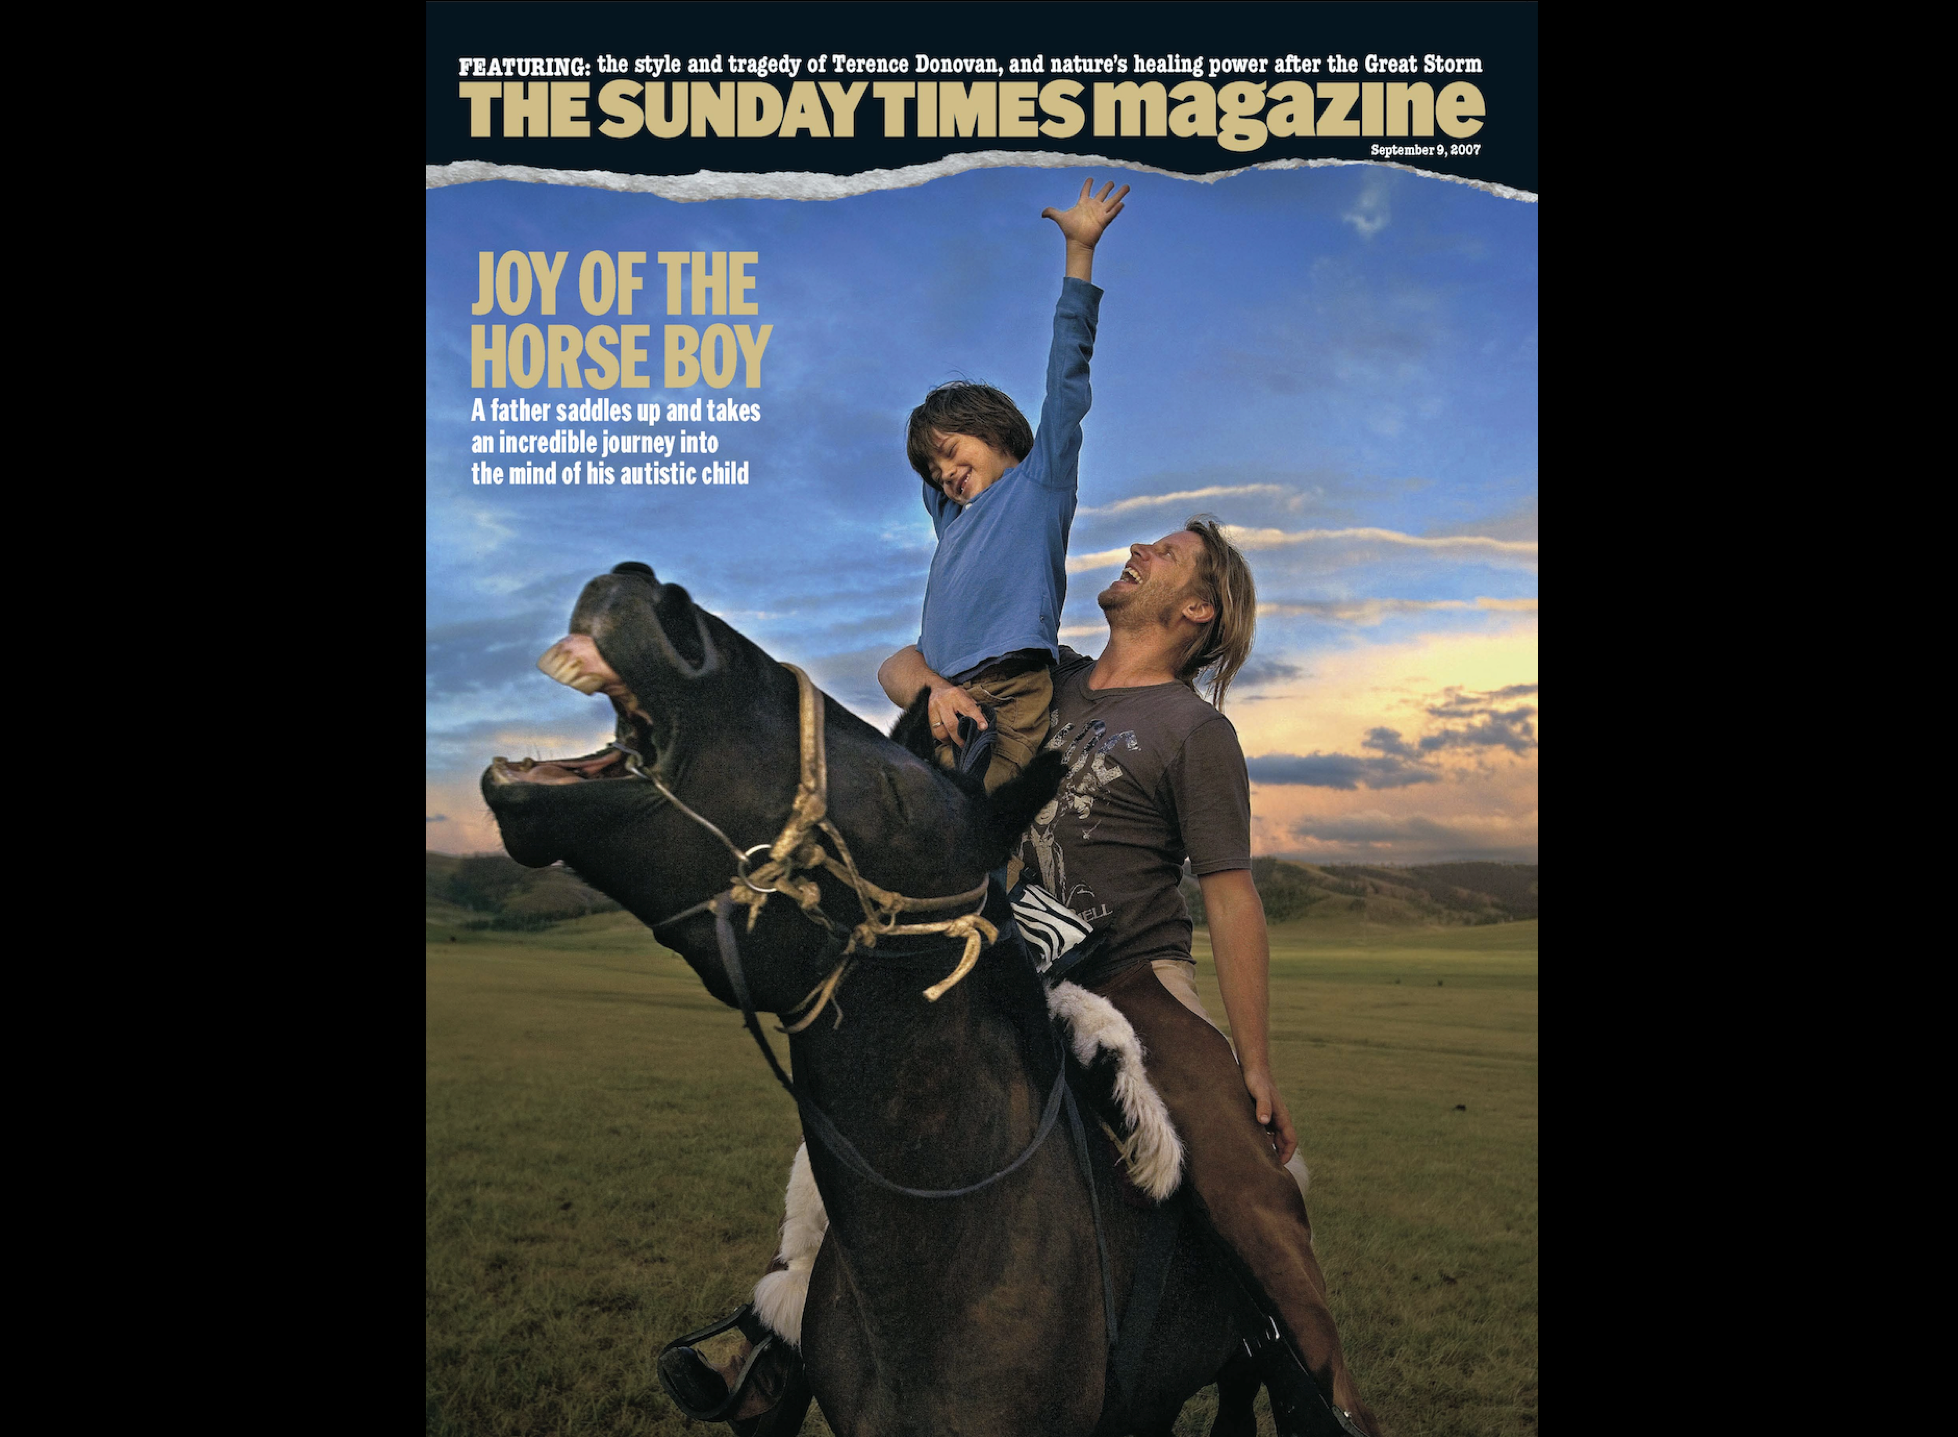 Joy of the Horseboy